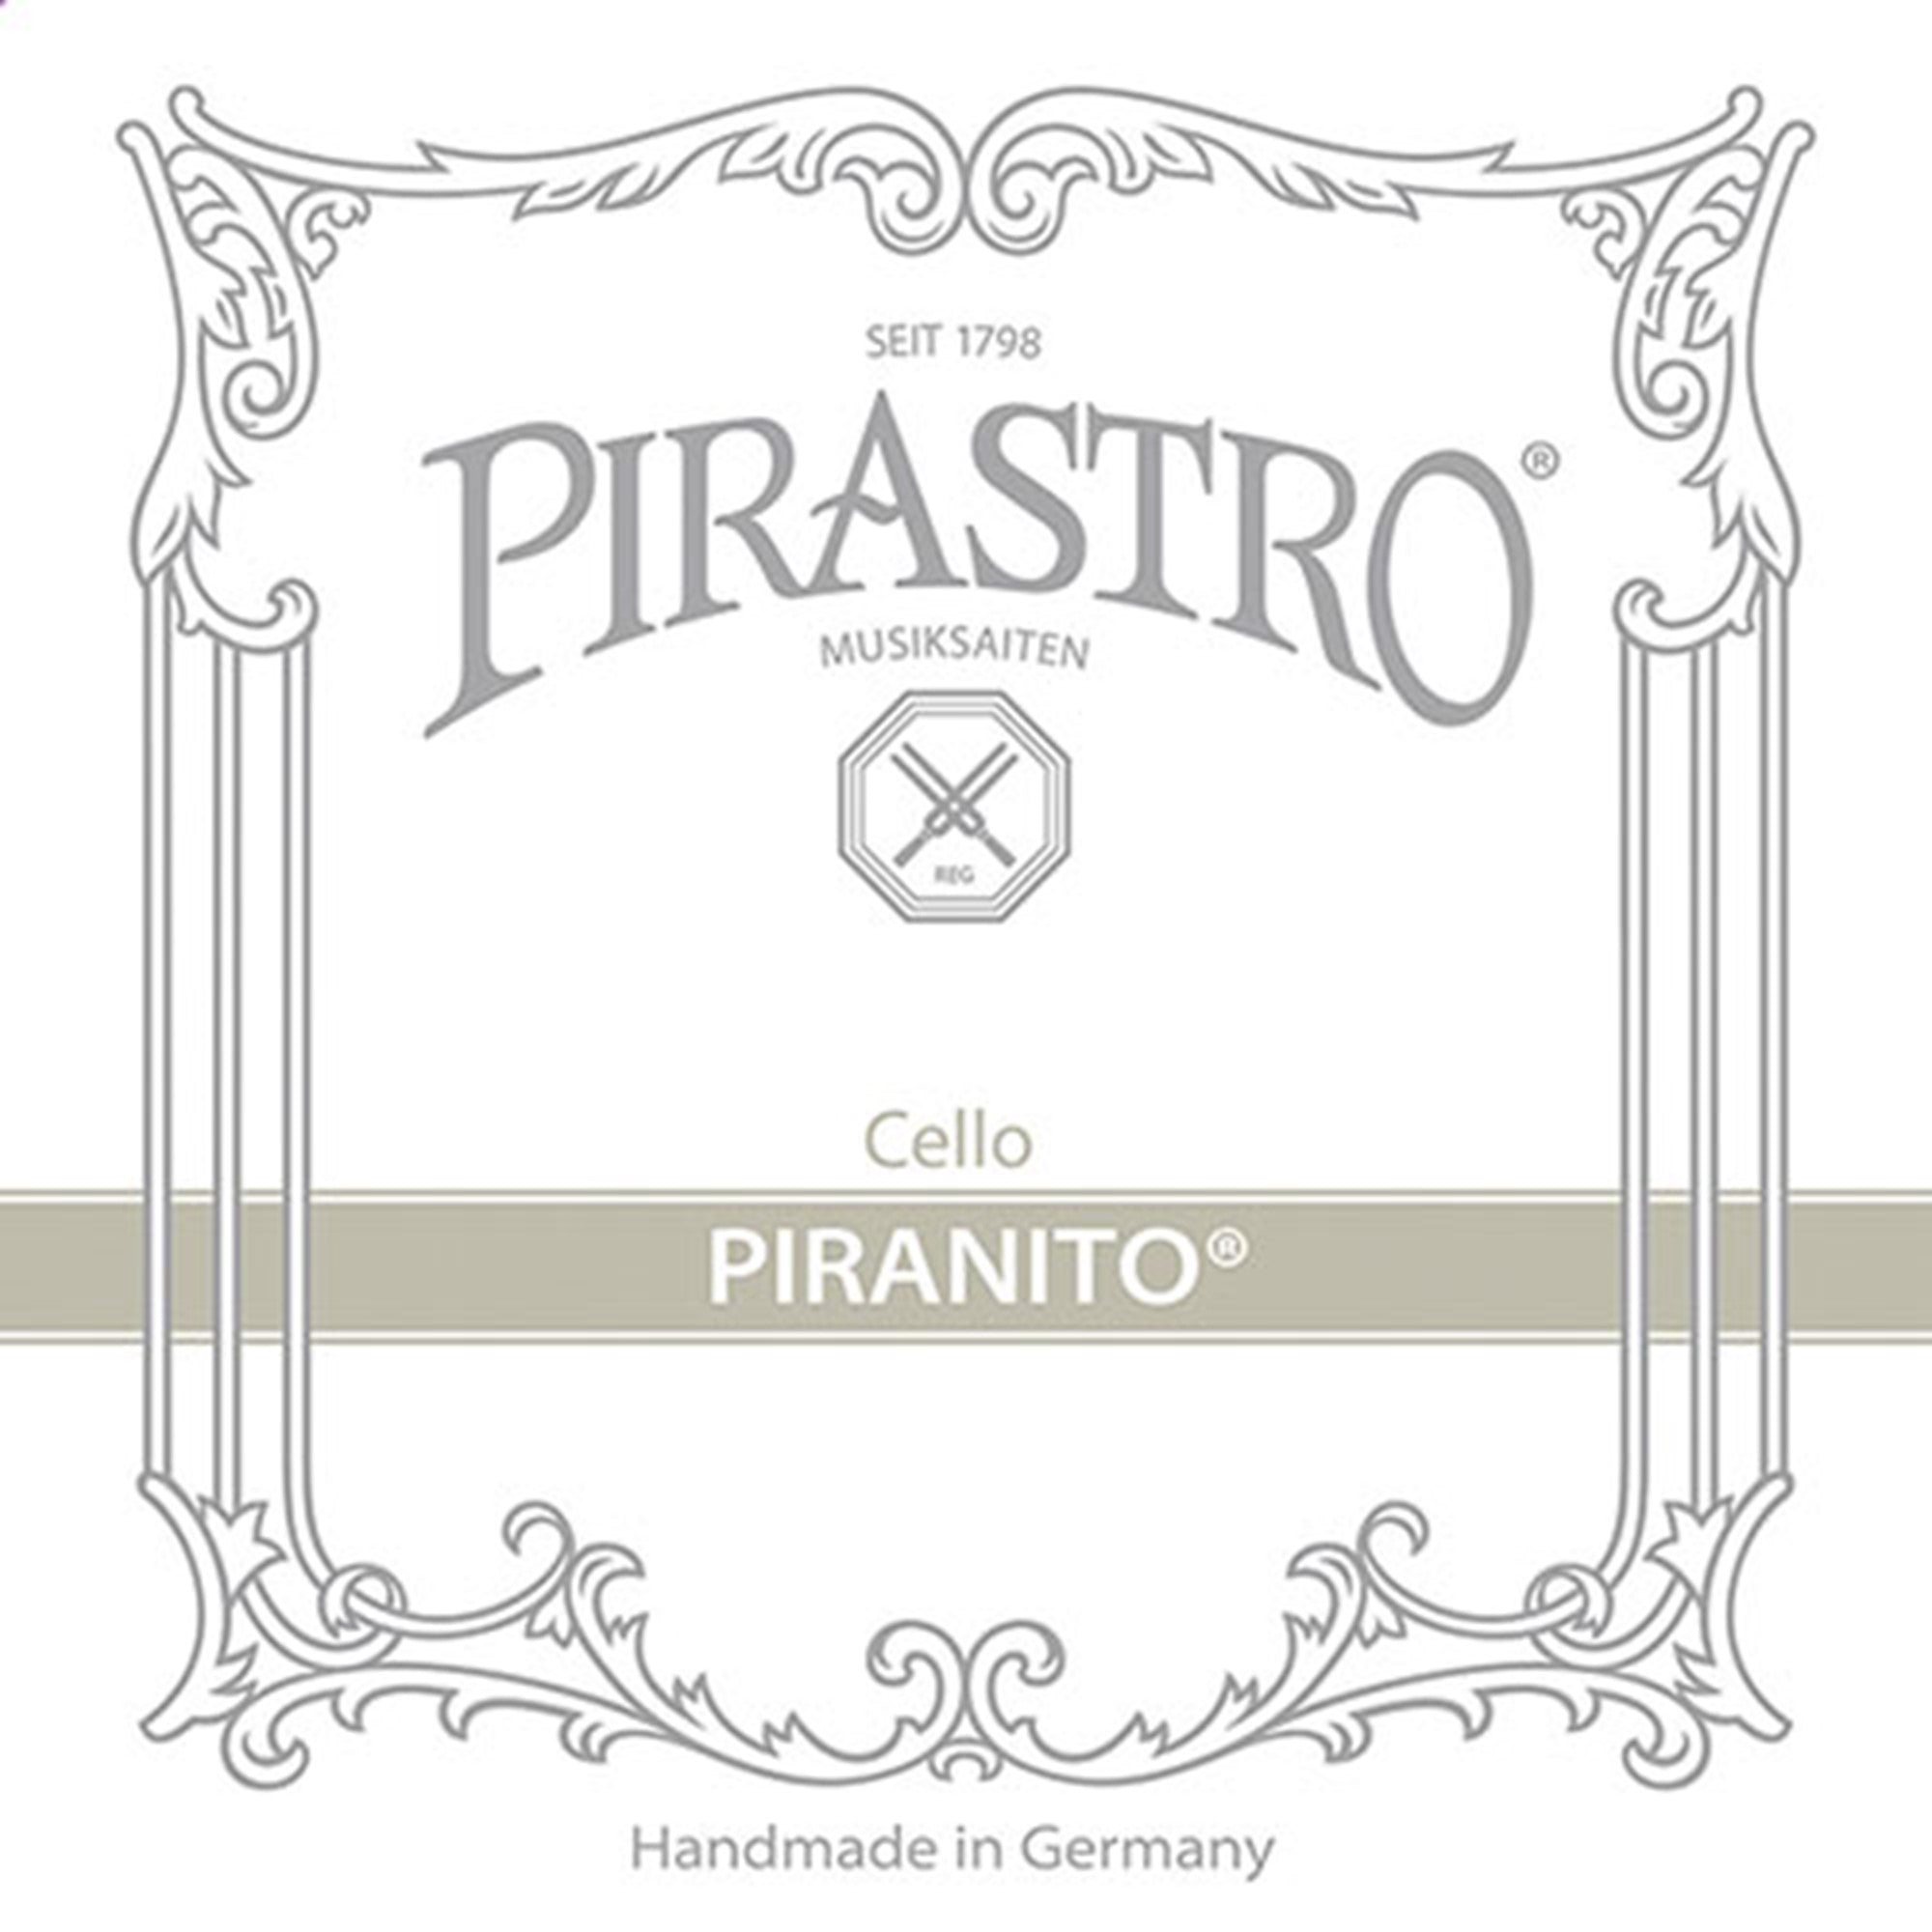 Pirastro Piranito Cello C String